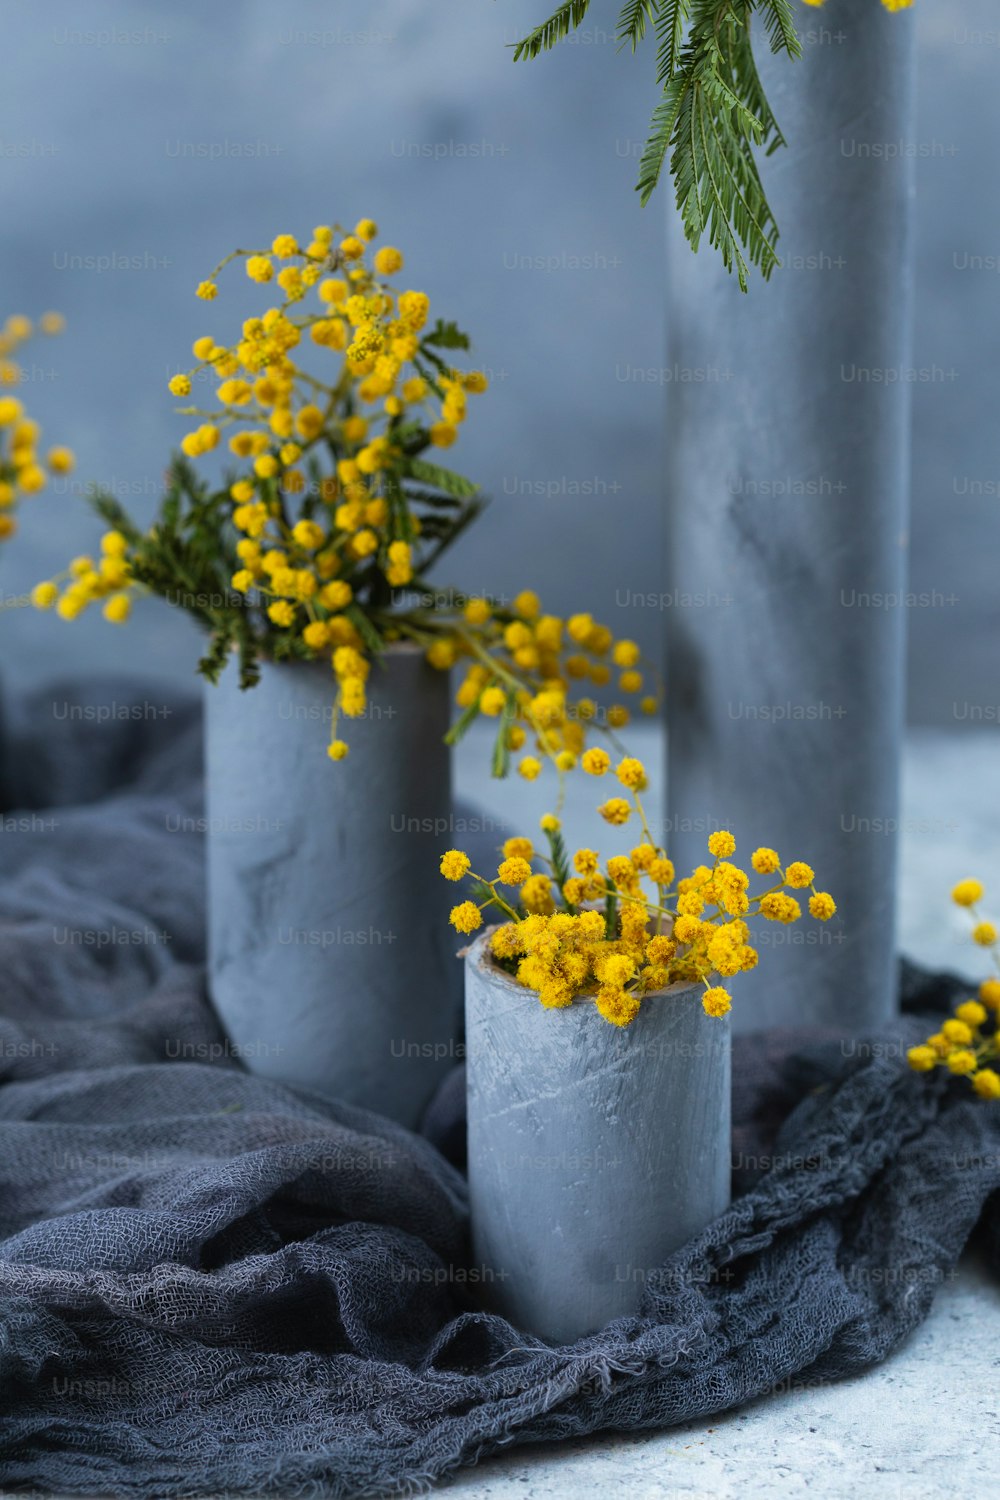 três vasos de cimento com flores amarelas neles